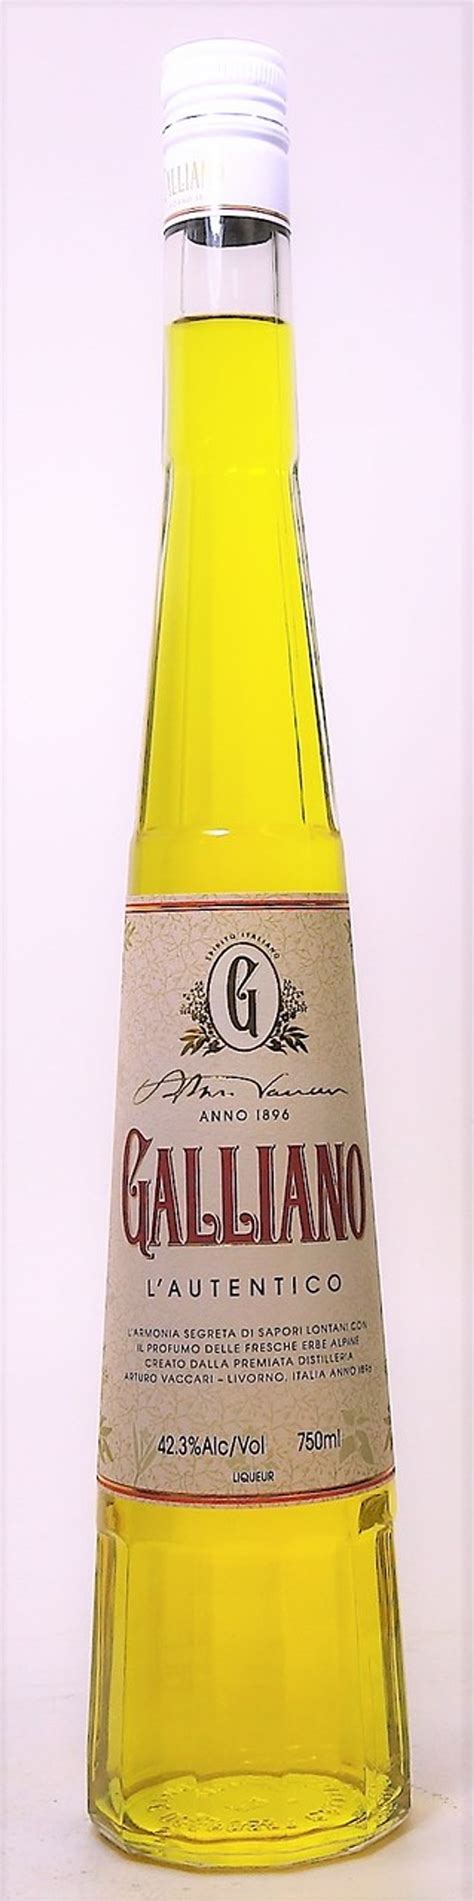 Galliano L´autentico Liqueur 750 Ml Old Town Tequila